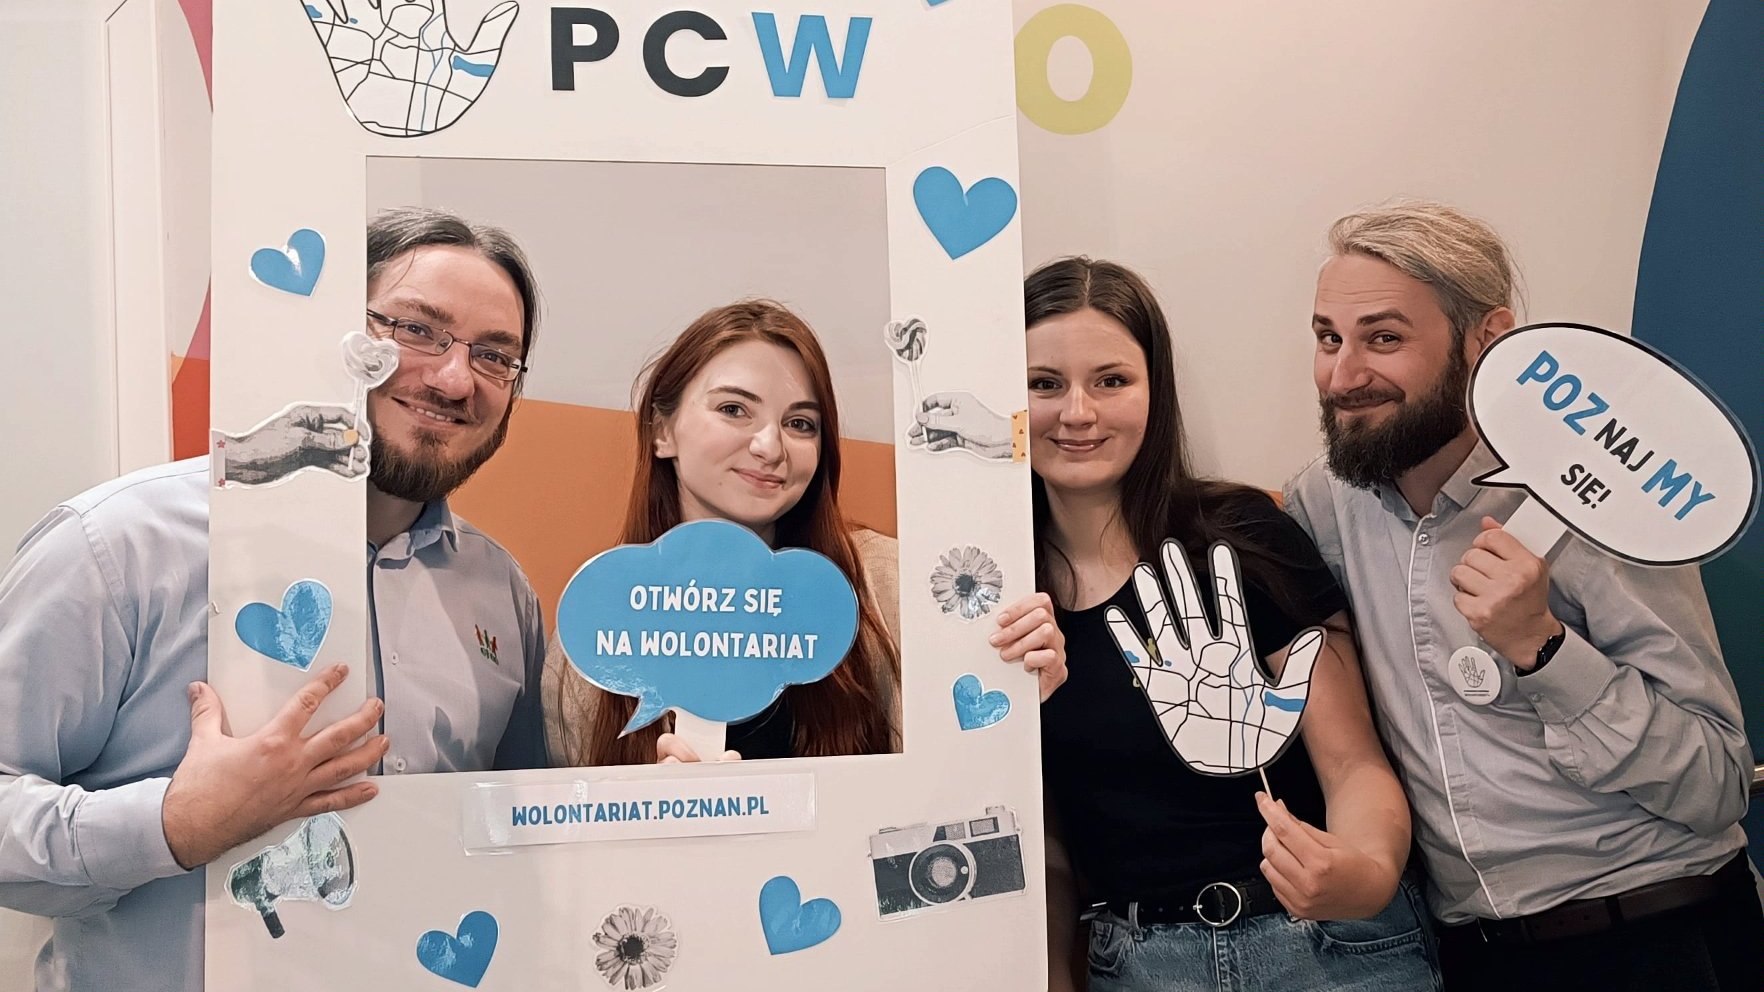 Grafika przedstawiająca cztery uśmiechnięte osoby: dwie kobiety i dwóch mężczyzn trzymających w ręku ramkę z napisem Poznańskie Centrum Wolontariatu, w tym jedna osoba trzyma hasło związane z wolontariatem. Grafika przedstawia organizatorów wydarzenia.